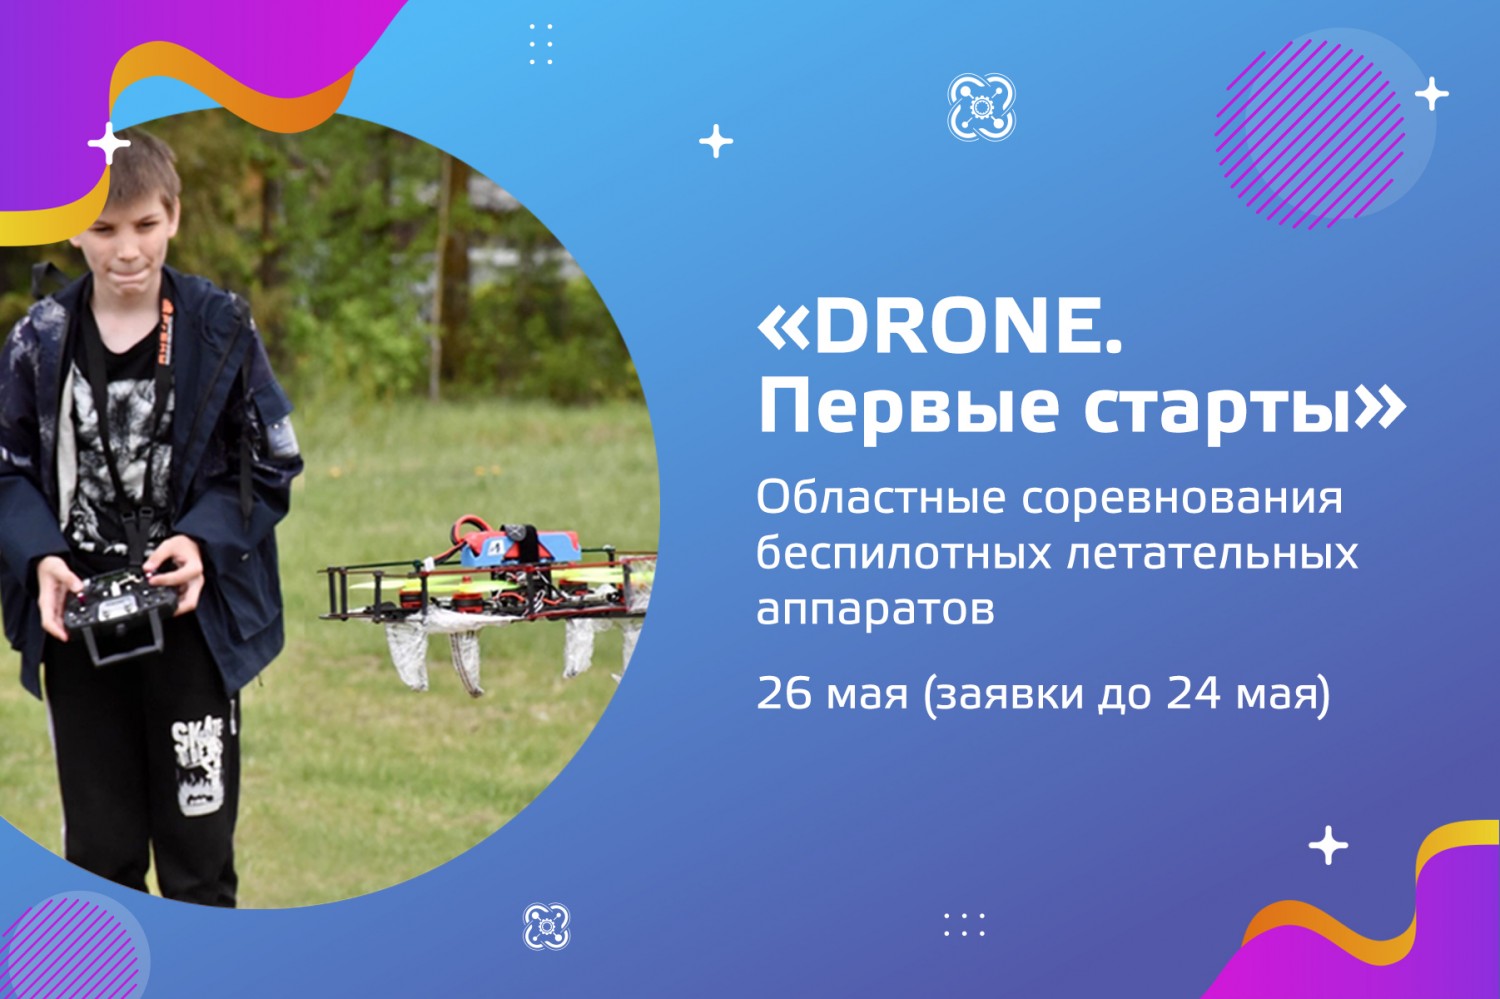 Приглашаем к участию в областных соревнованиях беспилотных летательных аппаратов «DRONE. Первые старты»